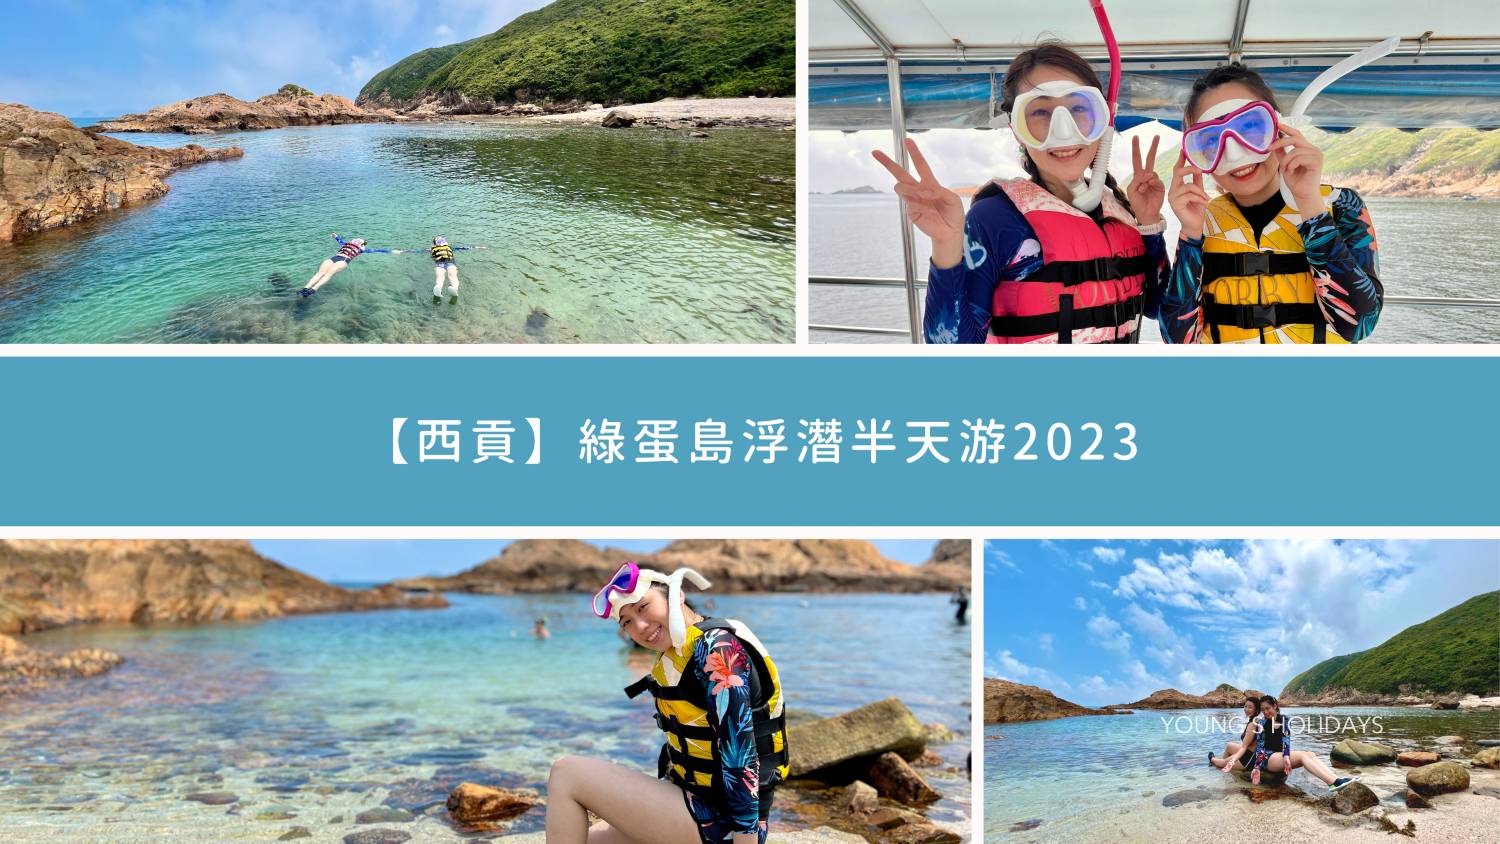 Young's Holidays 悠揚假期 【西貢】綠蛋島浮潛半天游2023 1